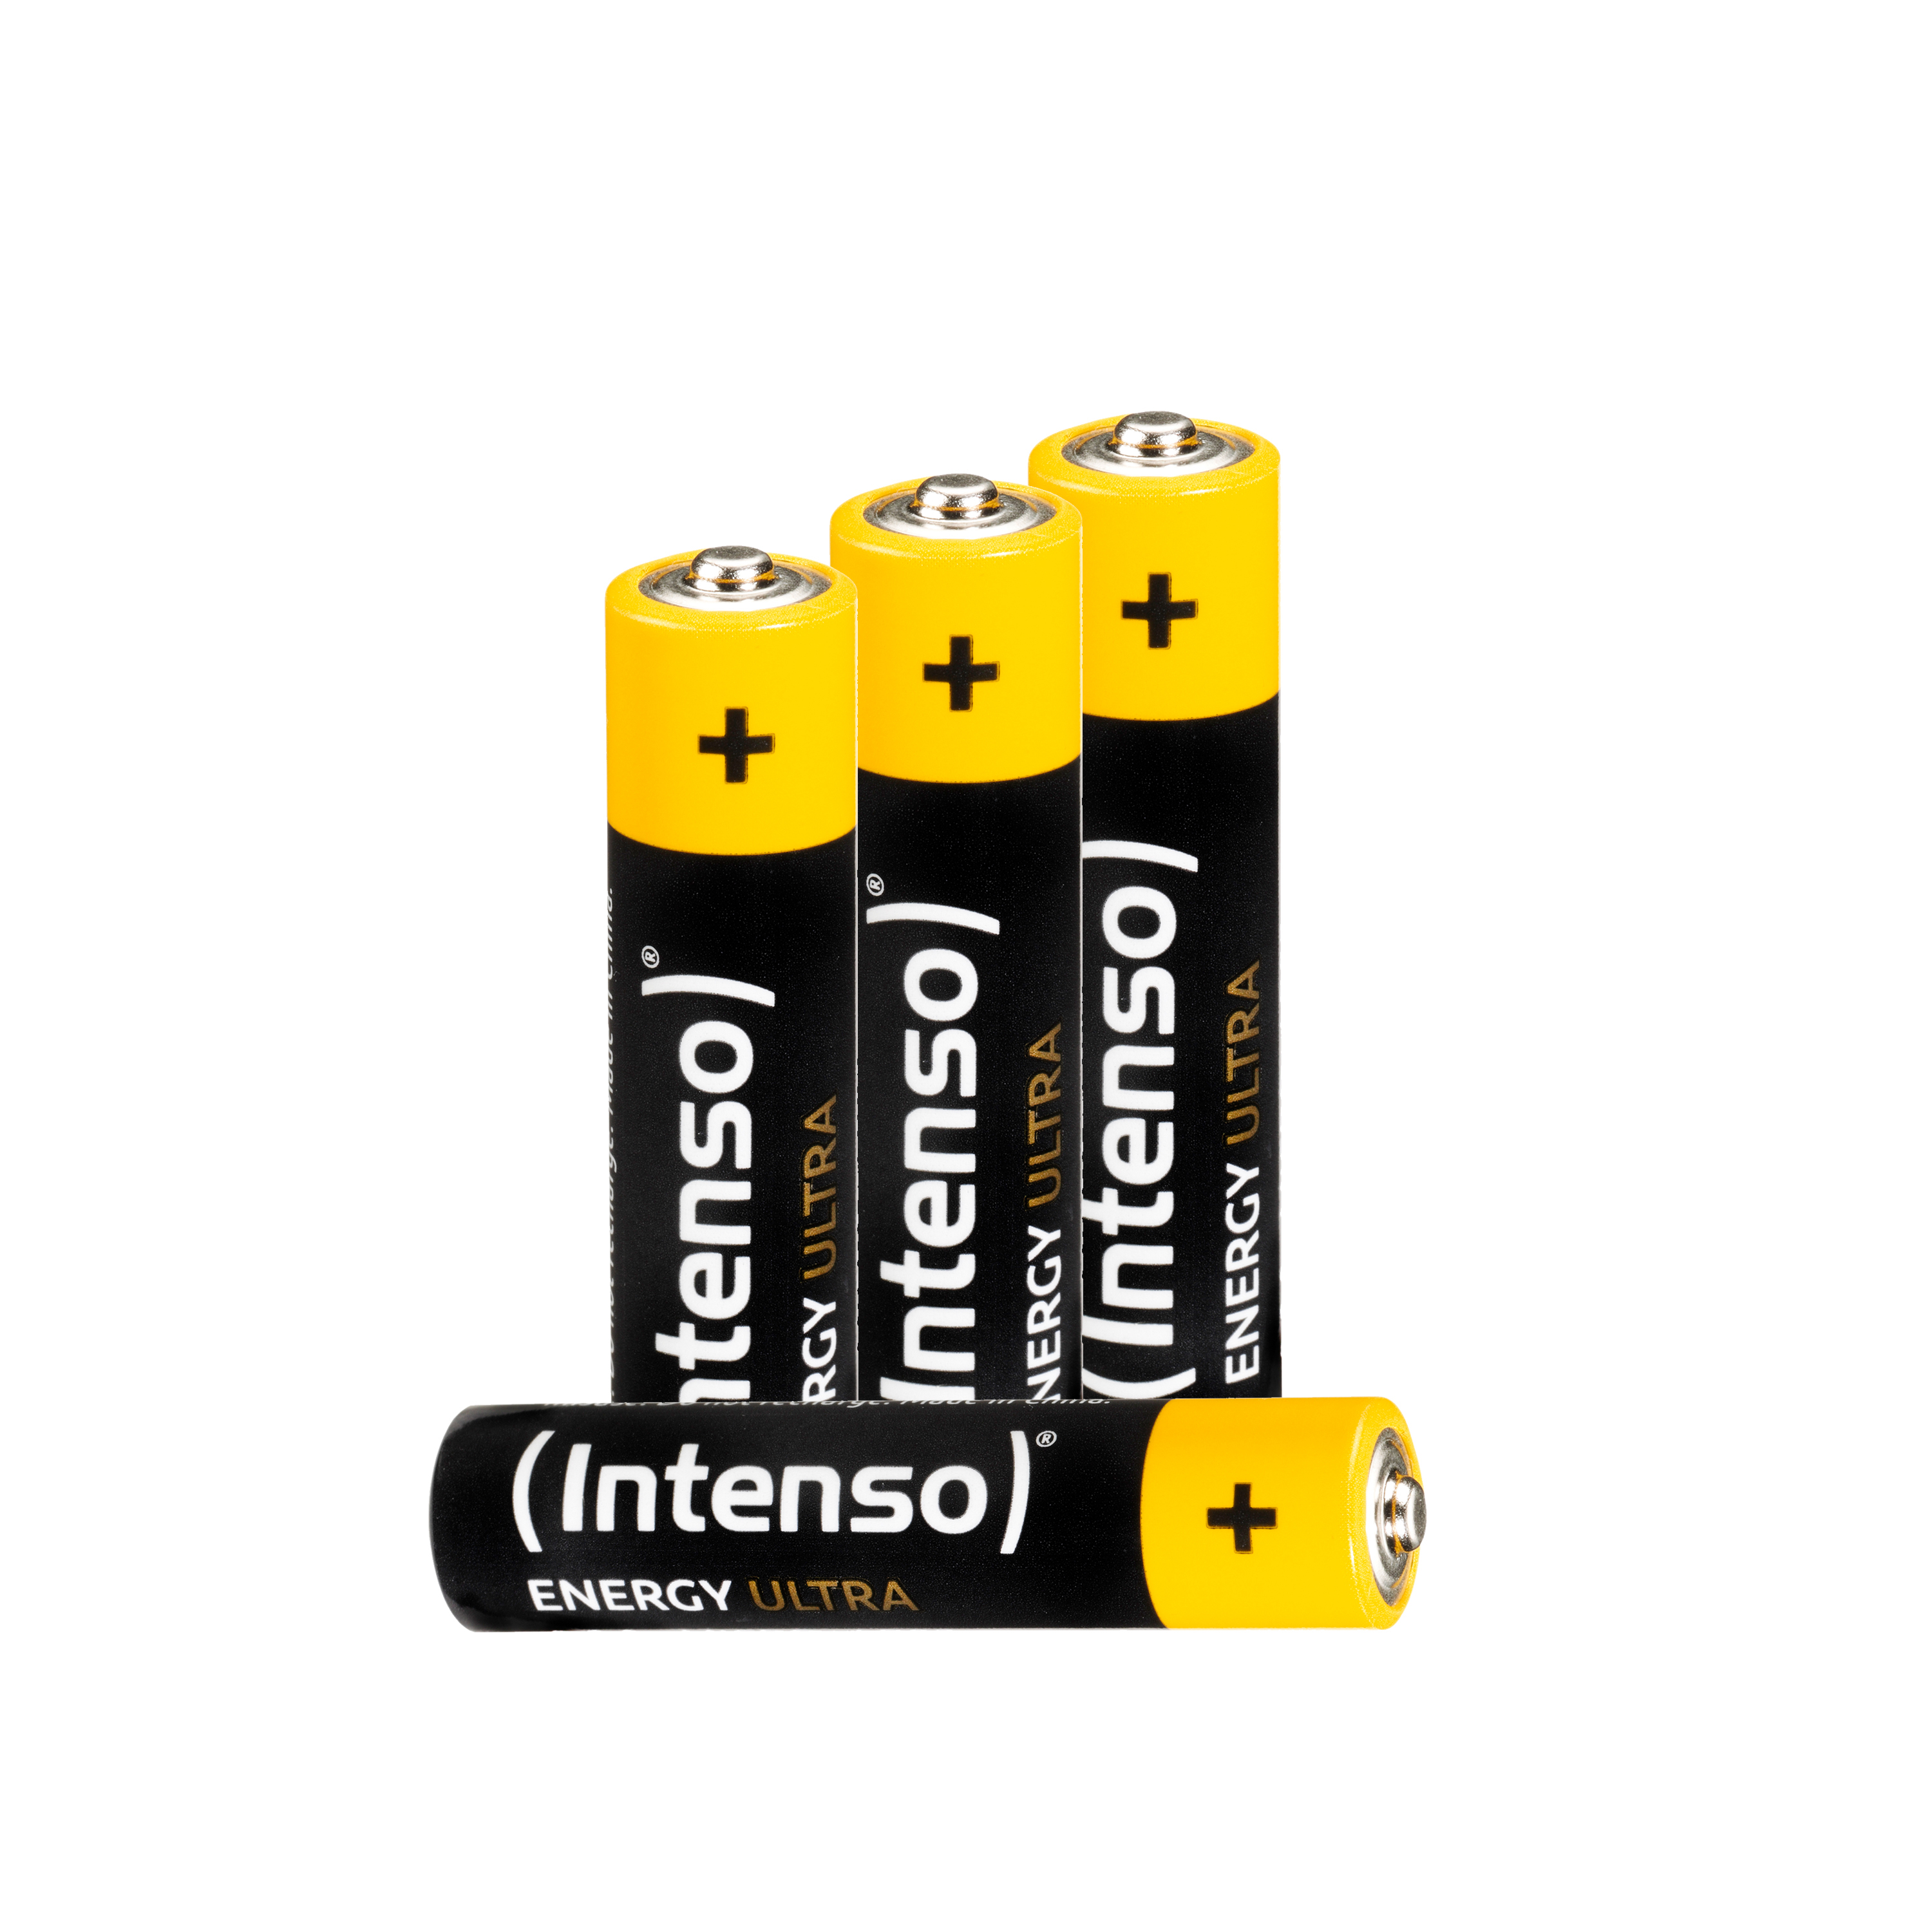 INTENSO Energy Micro Ultra LR03, (Quecksilberfrei), Pack 4er Manganese Alkaline LR03 Batterie AAA, AAA